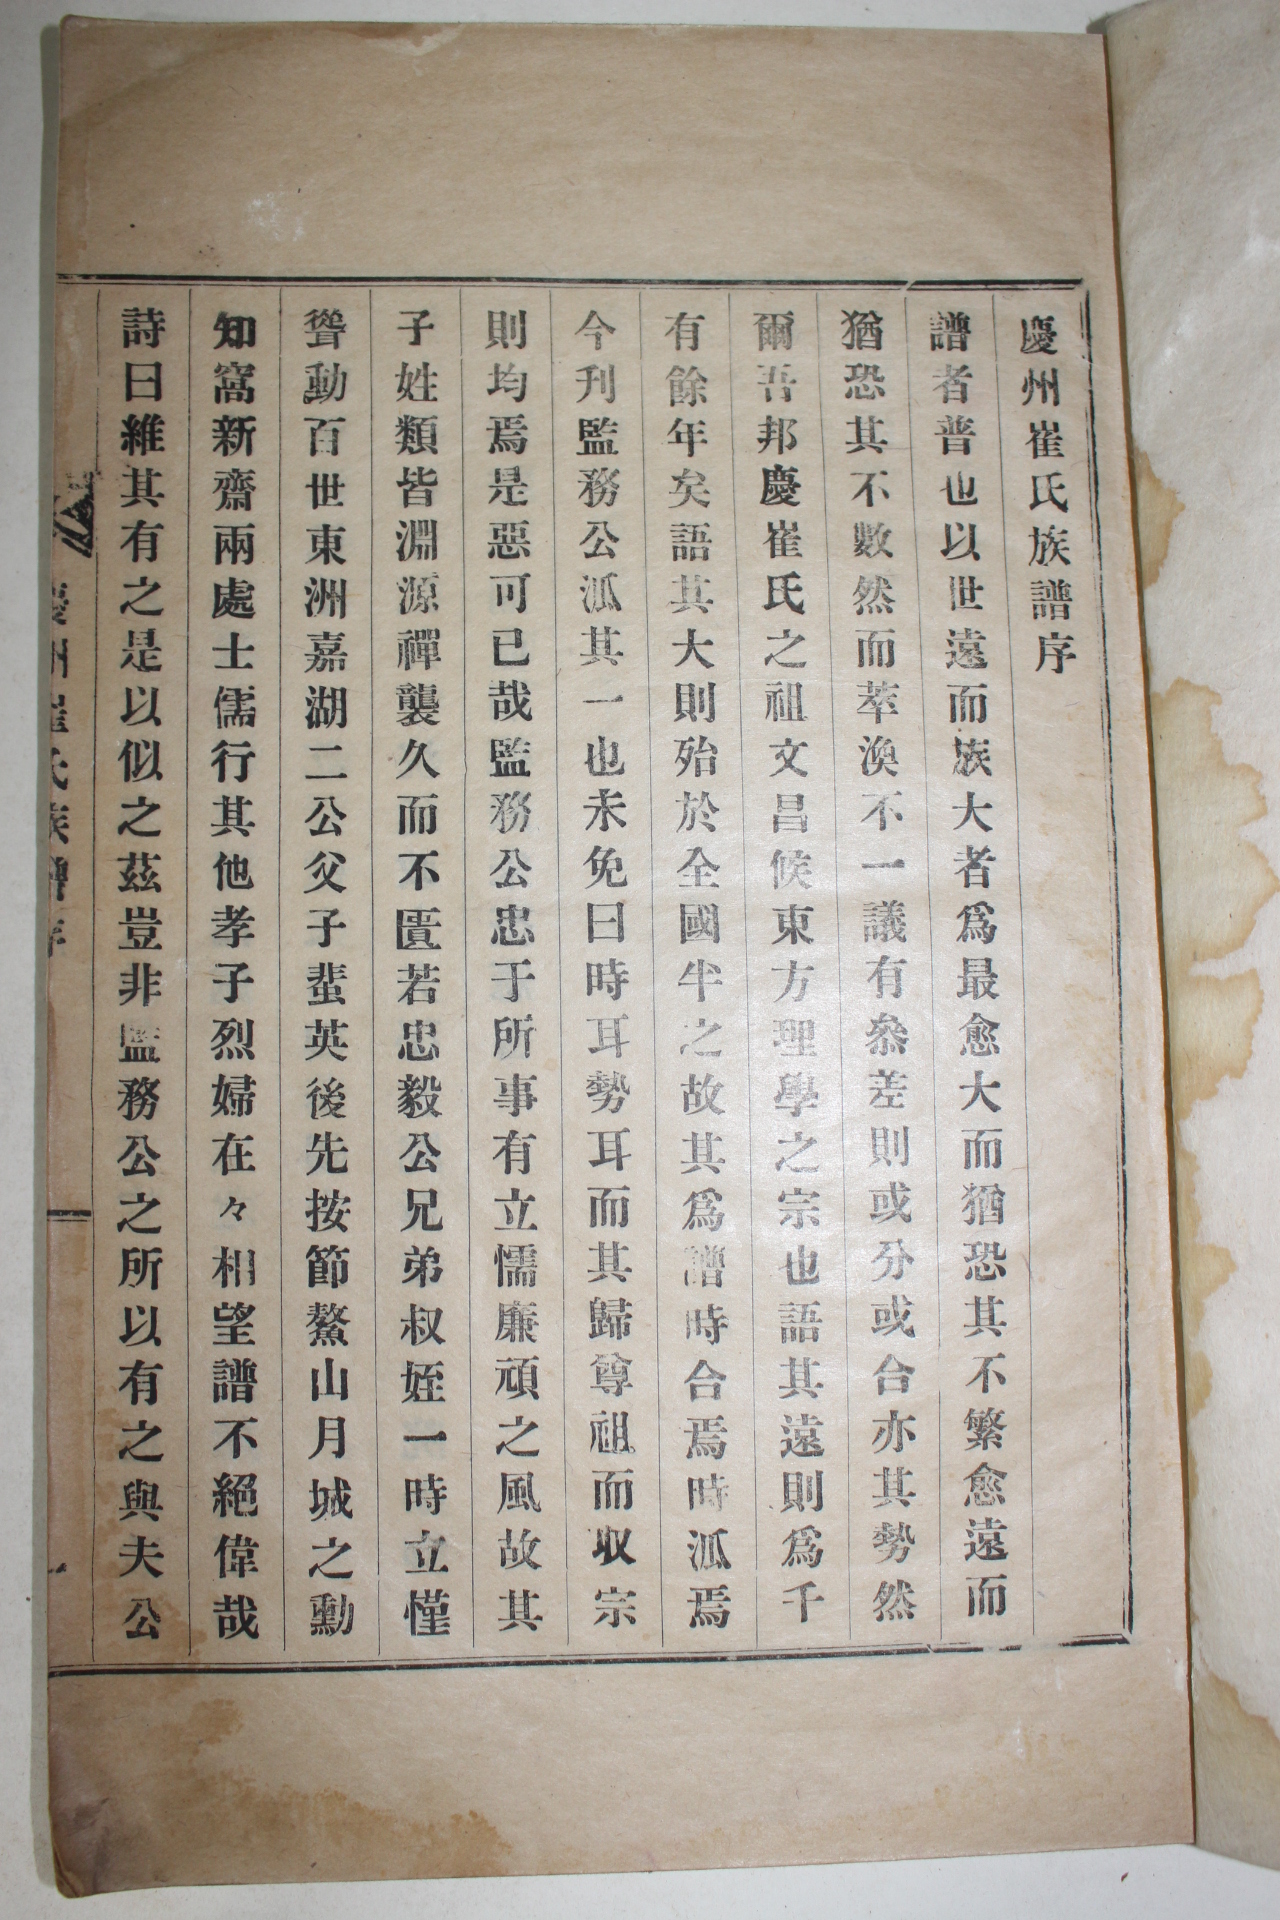 1930년(충북음성) 경주최씨족보(慶州崔氏族譜) 8권8책완질